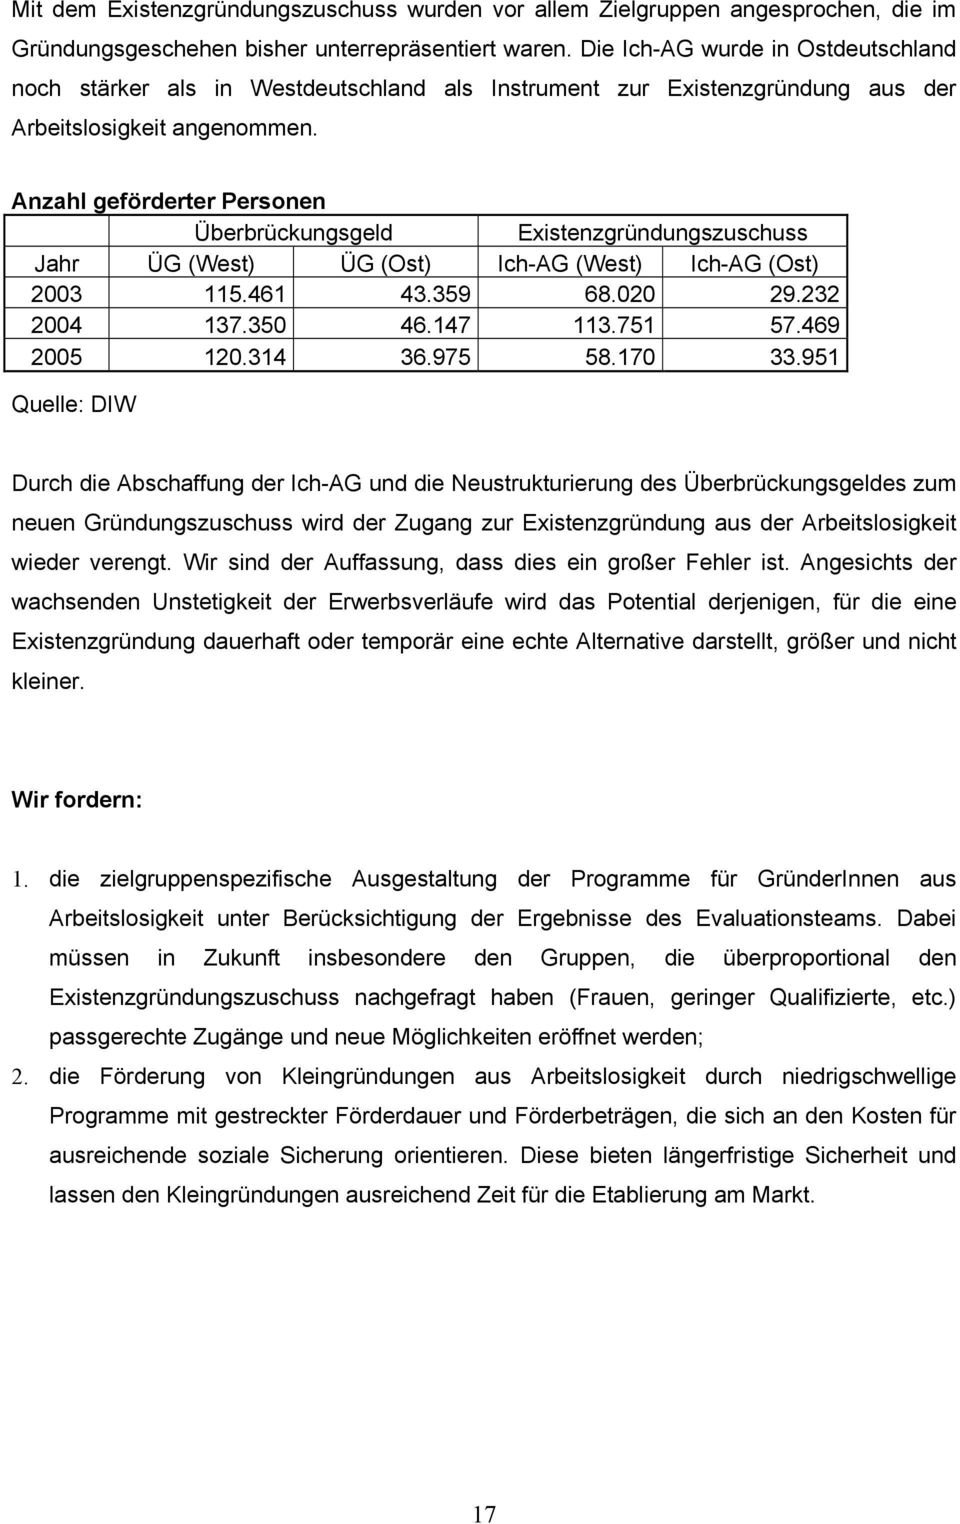 Anzahl geförderter Personen Überbrückungsgeld Existenzgründungszuschuss Jahr ÜG (West) ÜG (Ost) Ich-AG (West) Ich-AG (Ost) 2003 115.461 43.359 68.020 29.232 2004 137.350 46.147 113.751 57.